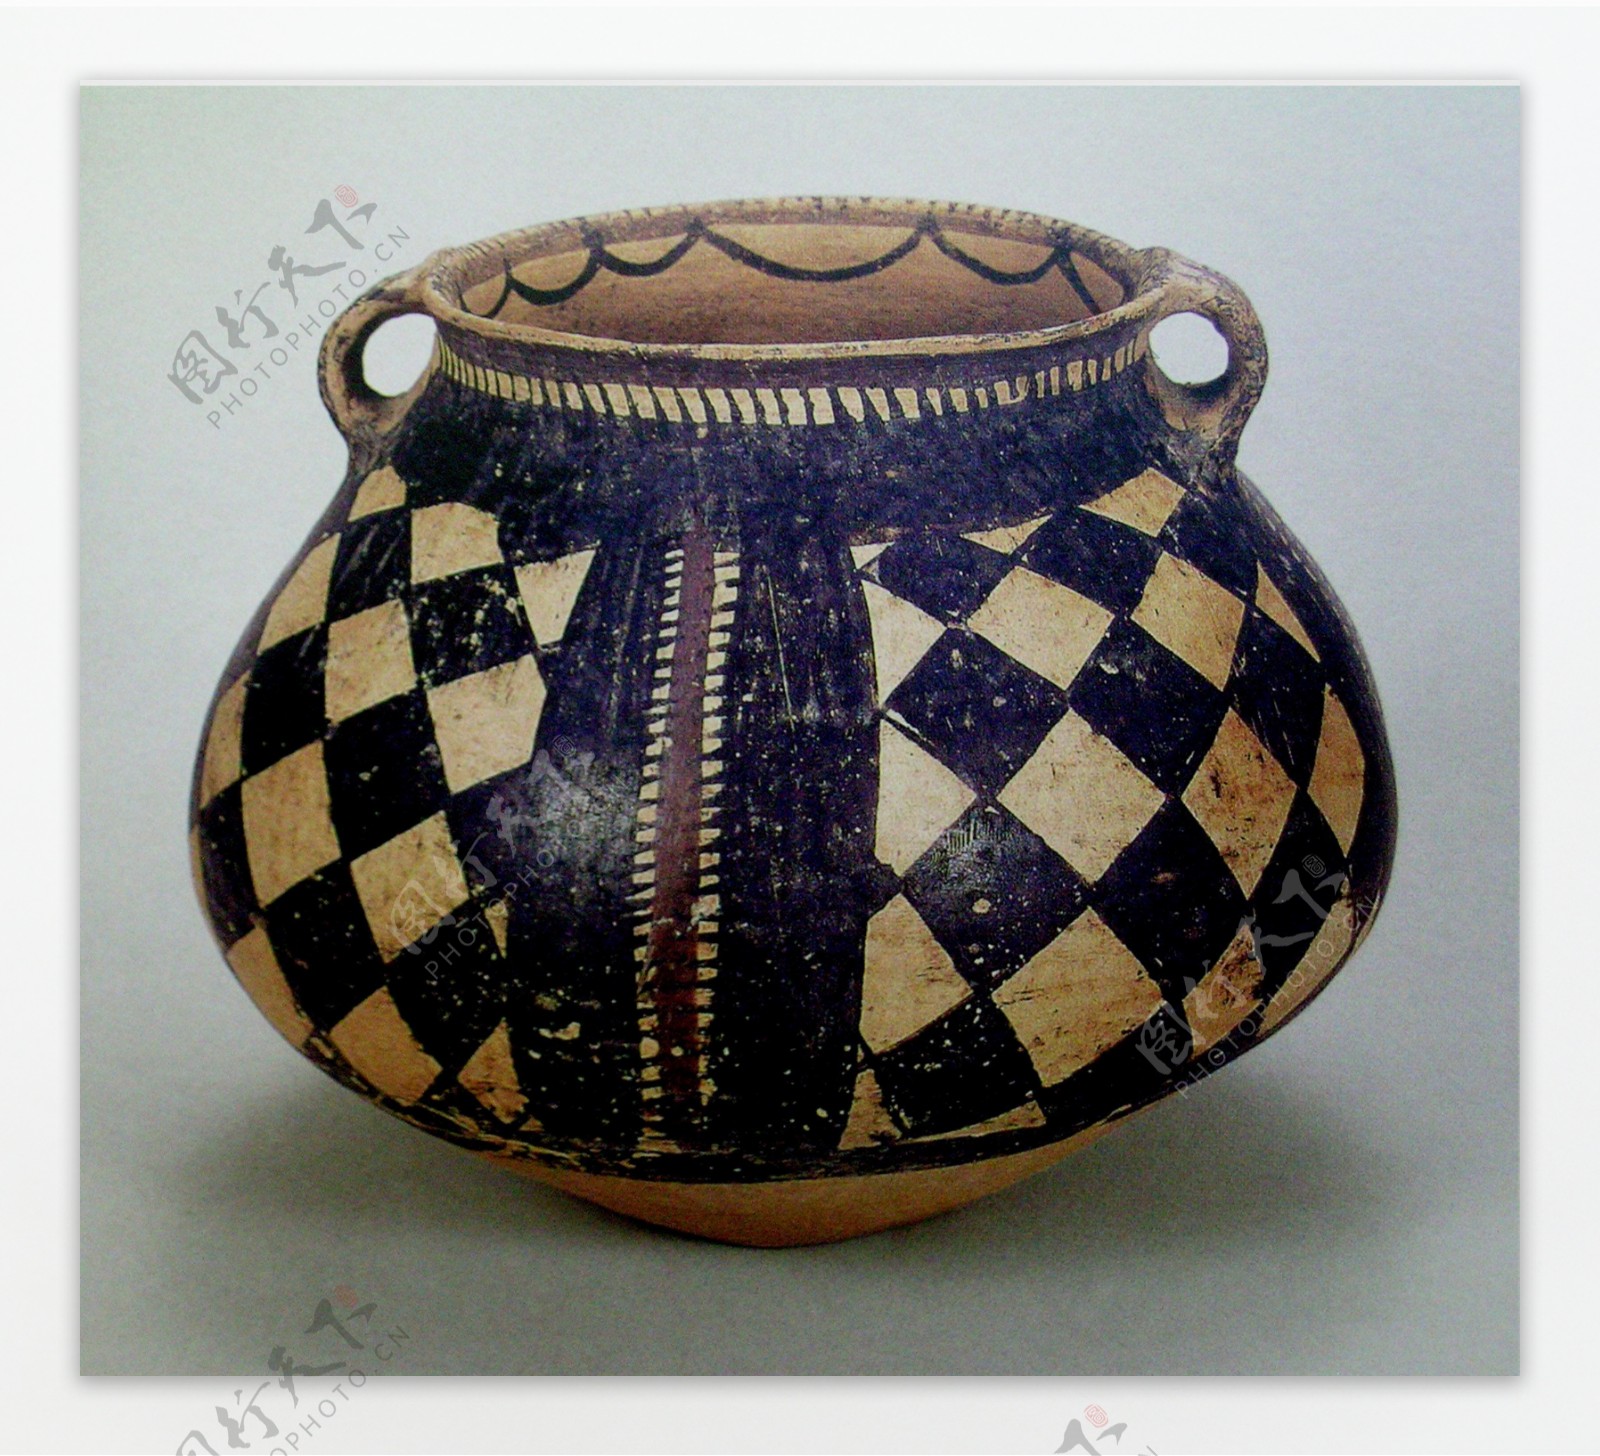 菱格纹彩陶罐